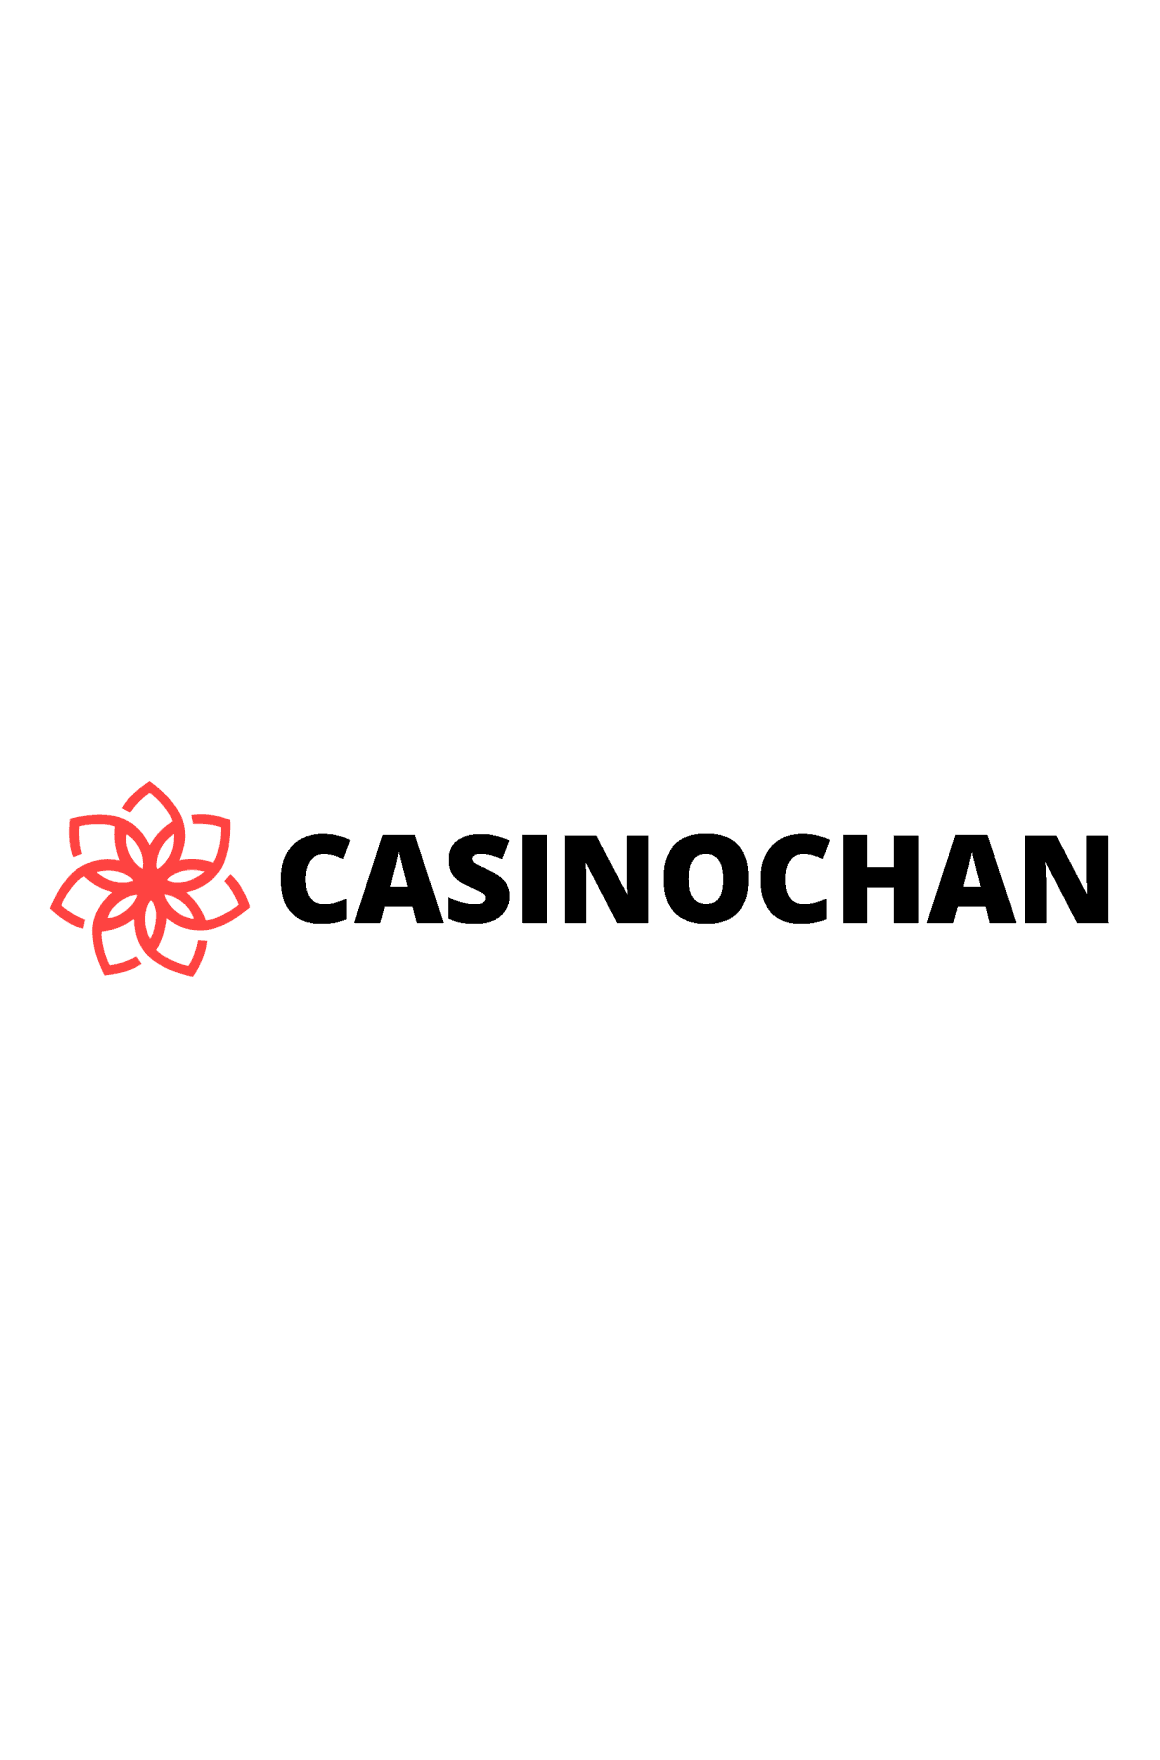 Casinochan